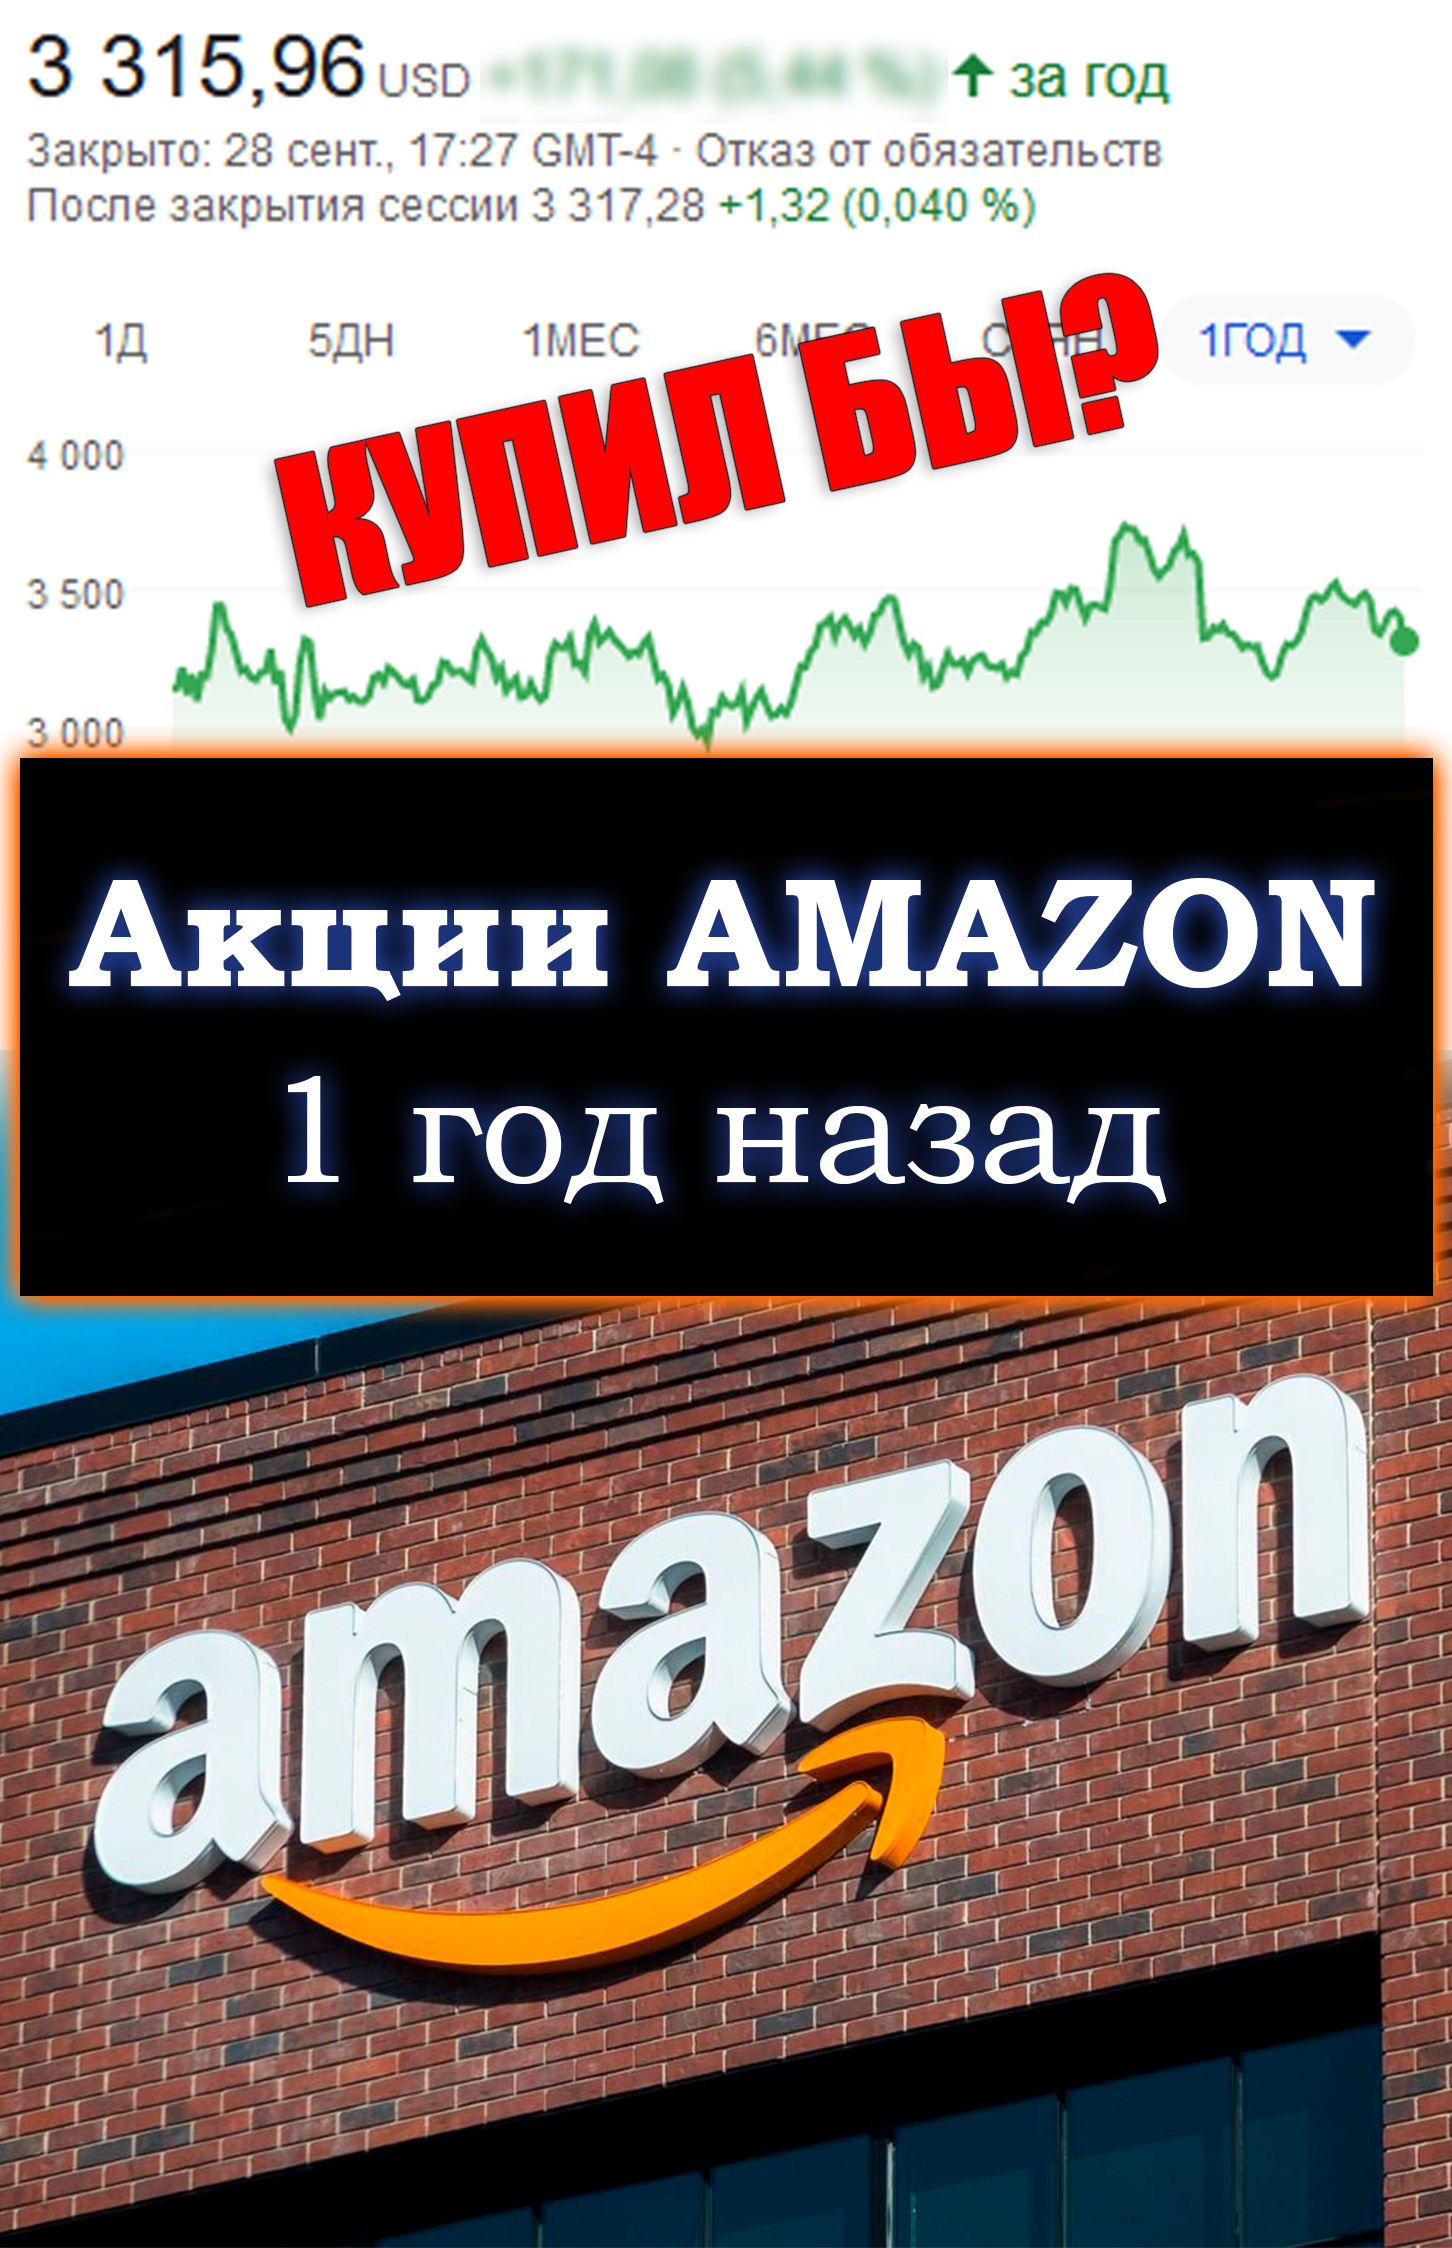 Сколько можно было заработать, купив акции Amazon 1 год назад?